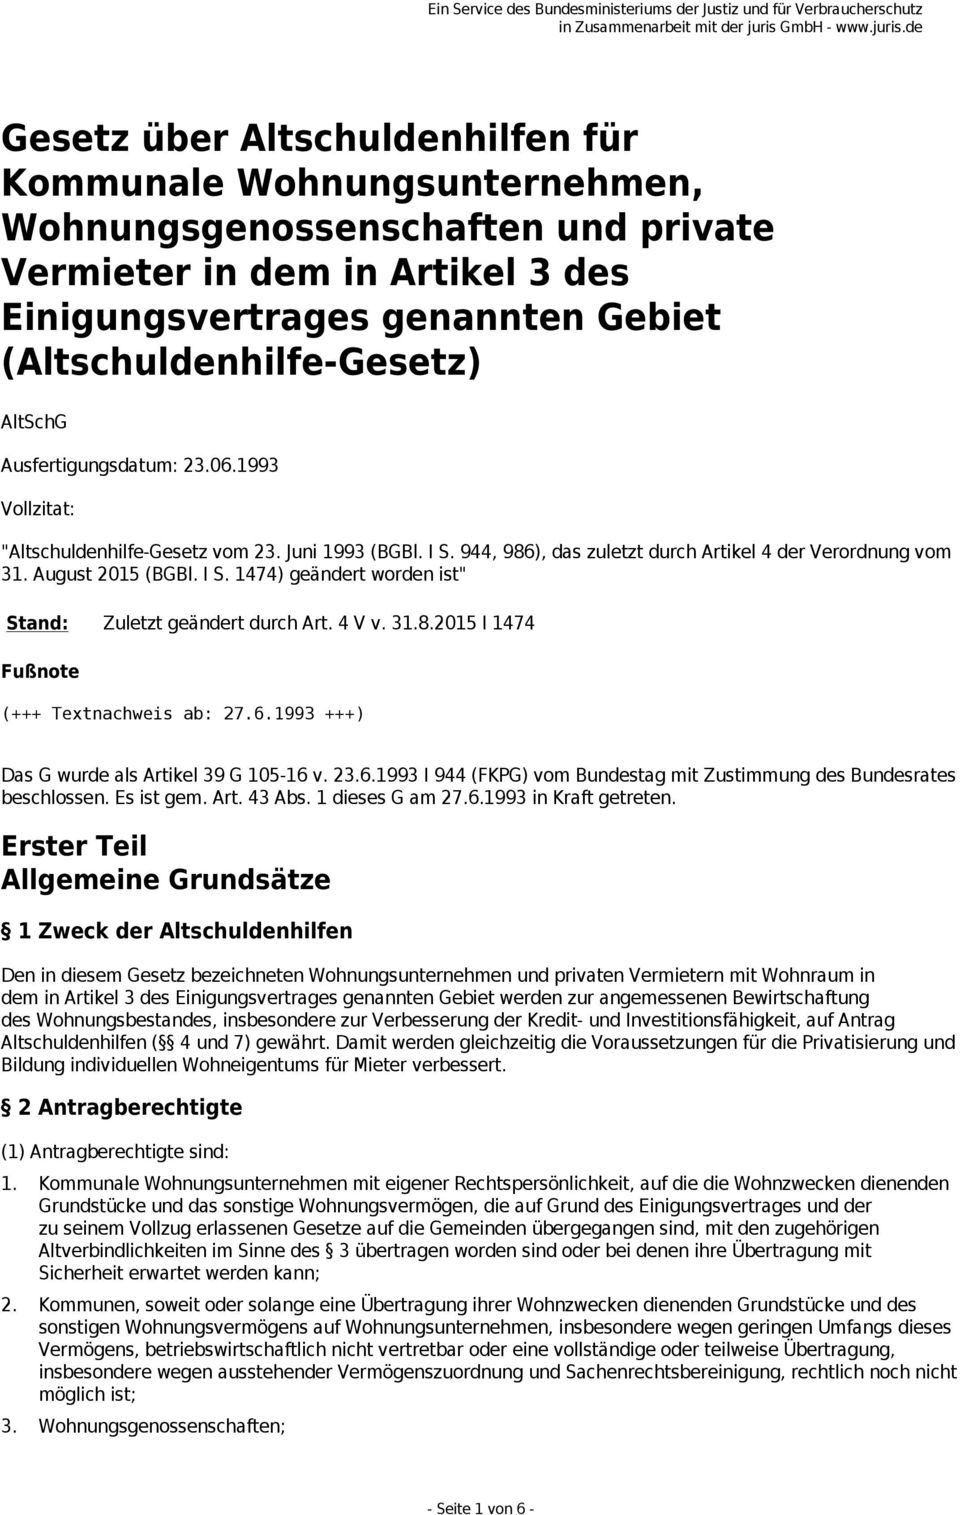 4 V v. 31.8.2015 I 1474 Fußnote (+++ Textnachweis ab: 27.6.1993 +++) Das G wurde als Artikel 39 G 105-16 v. 23.6.1993 I 944 (FKPG) vom Bundestag mit Zustimmung des Bundesrates beschlossen. Es ist gem.